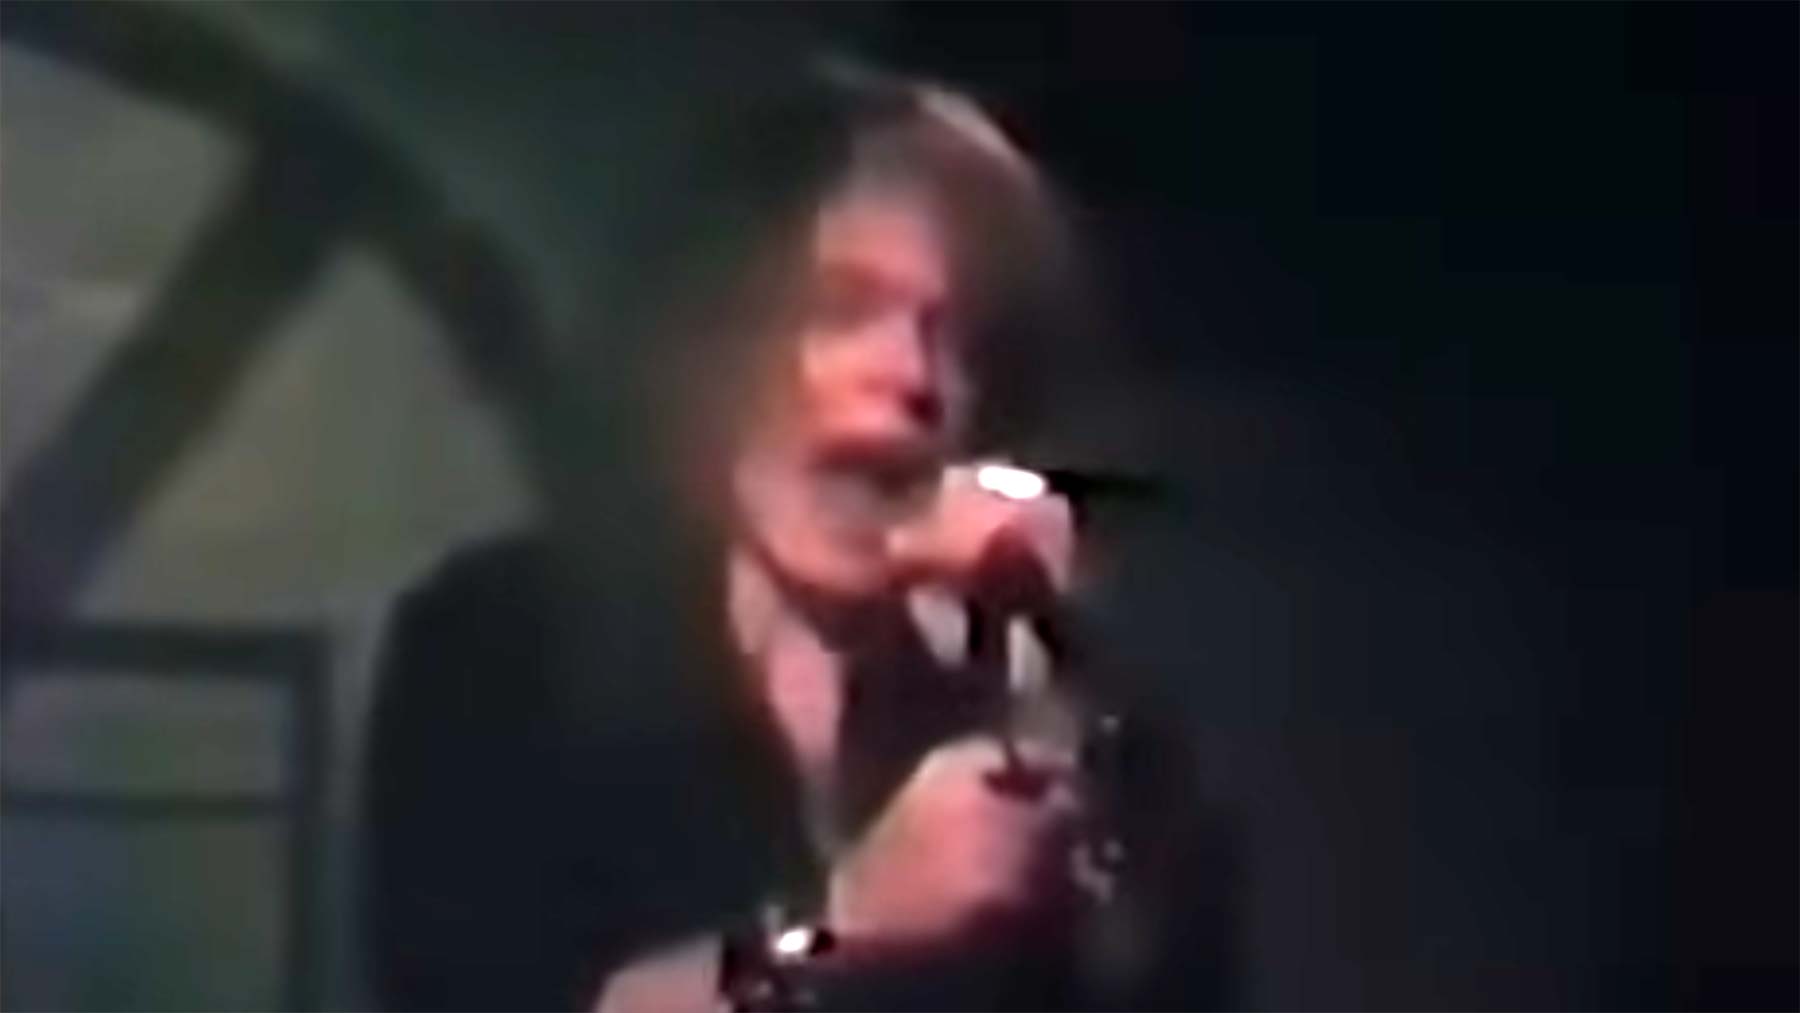 Auftritt von Guns N‘ Roses, bevor sie berühmt geworden sind (1985)